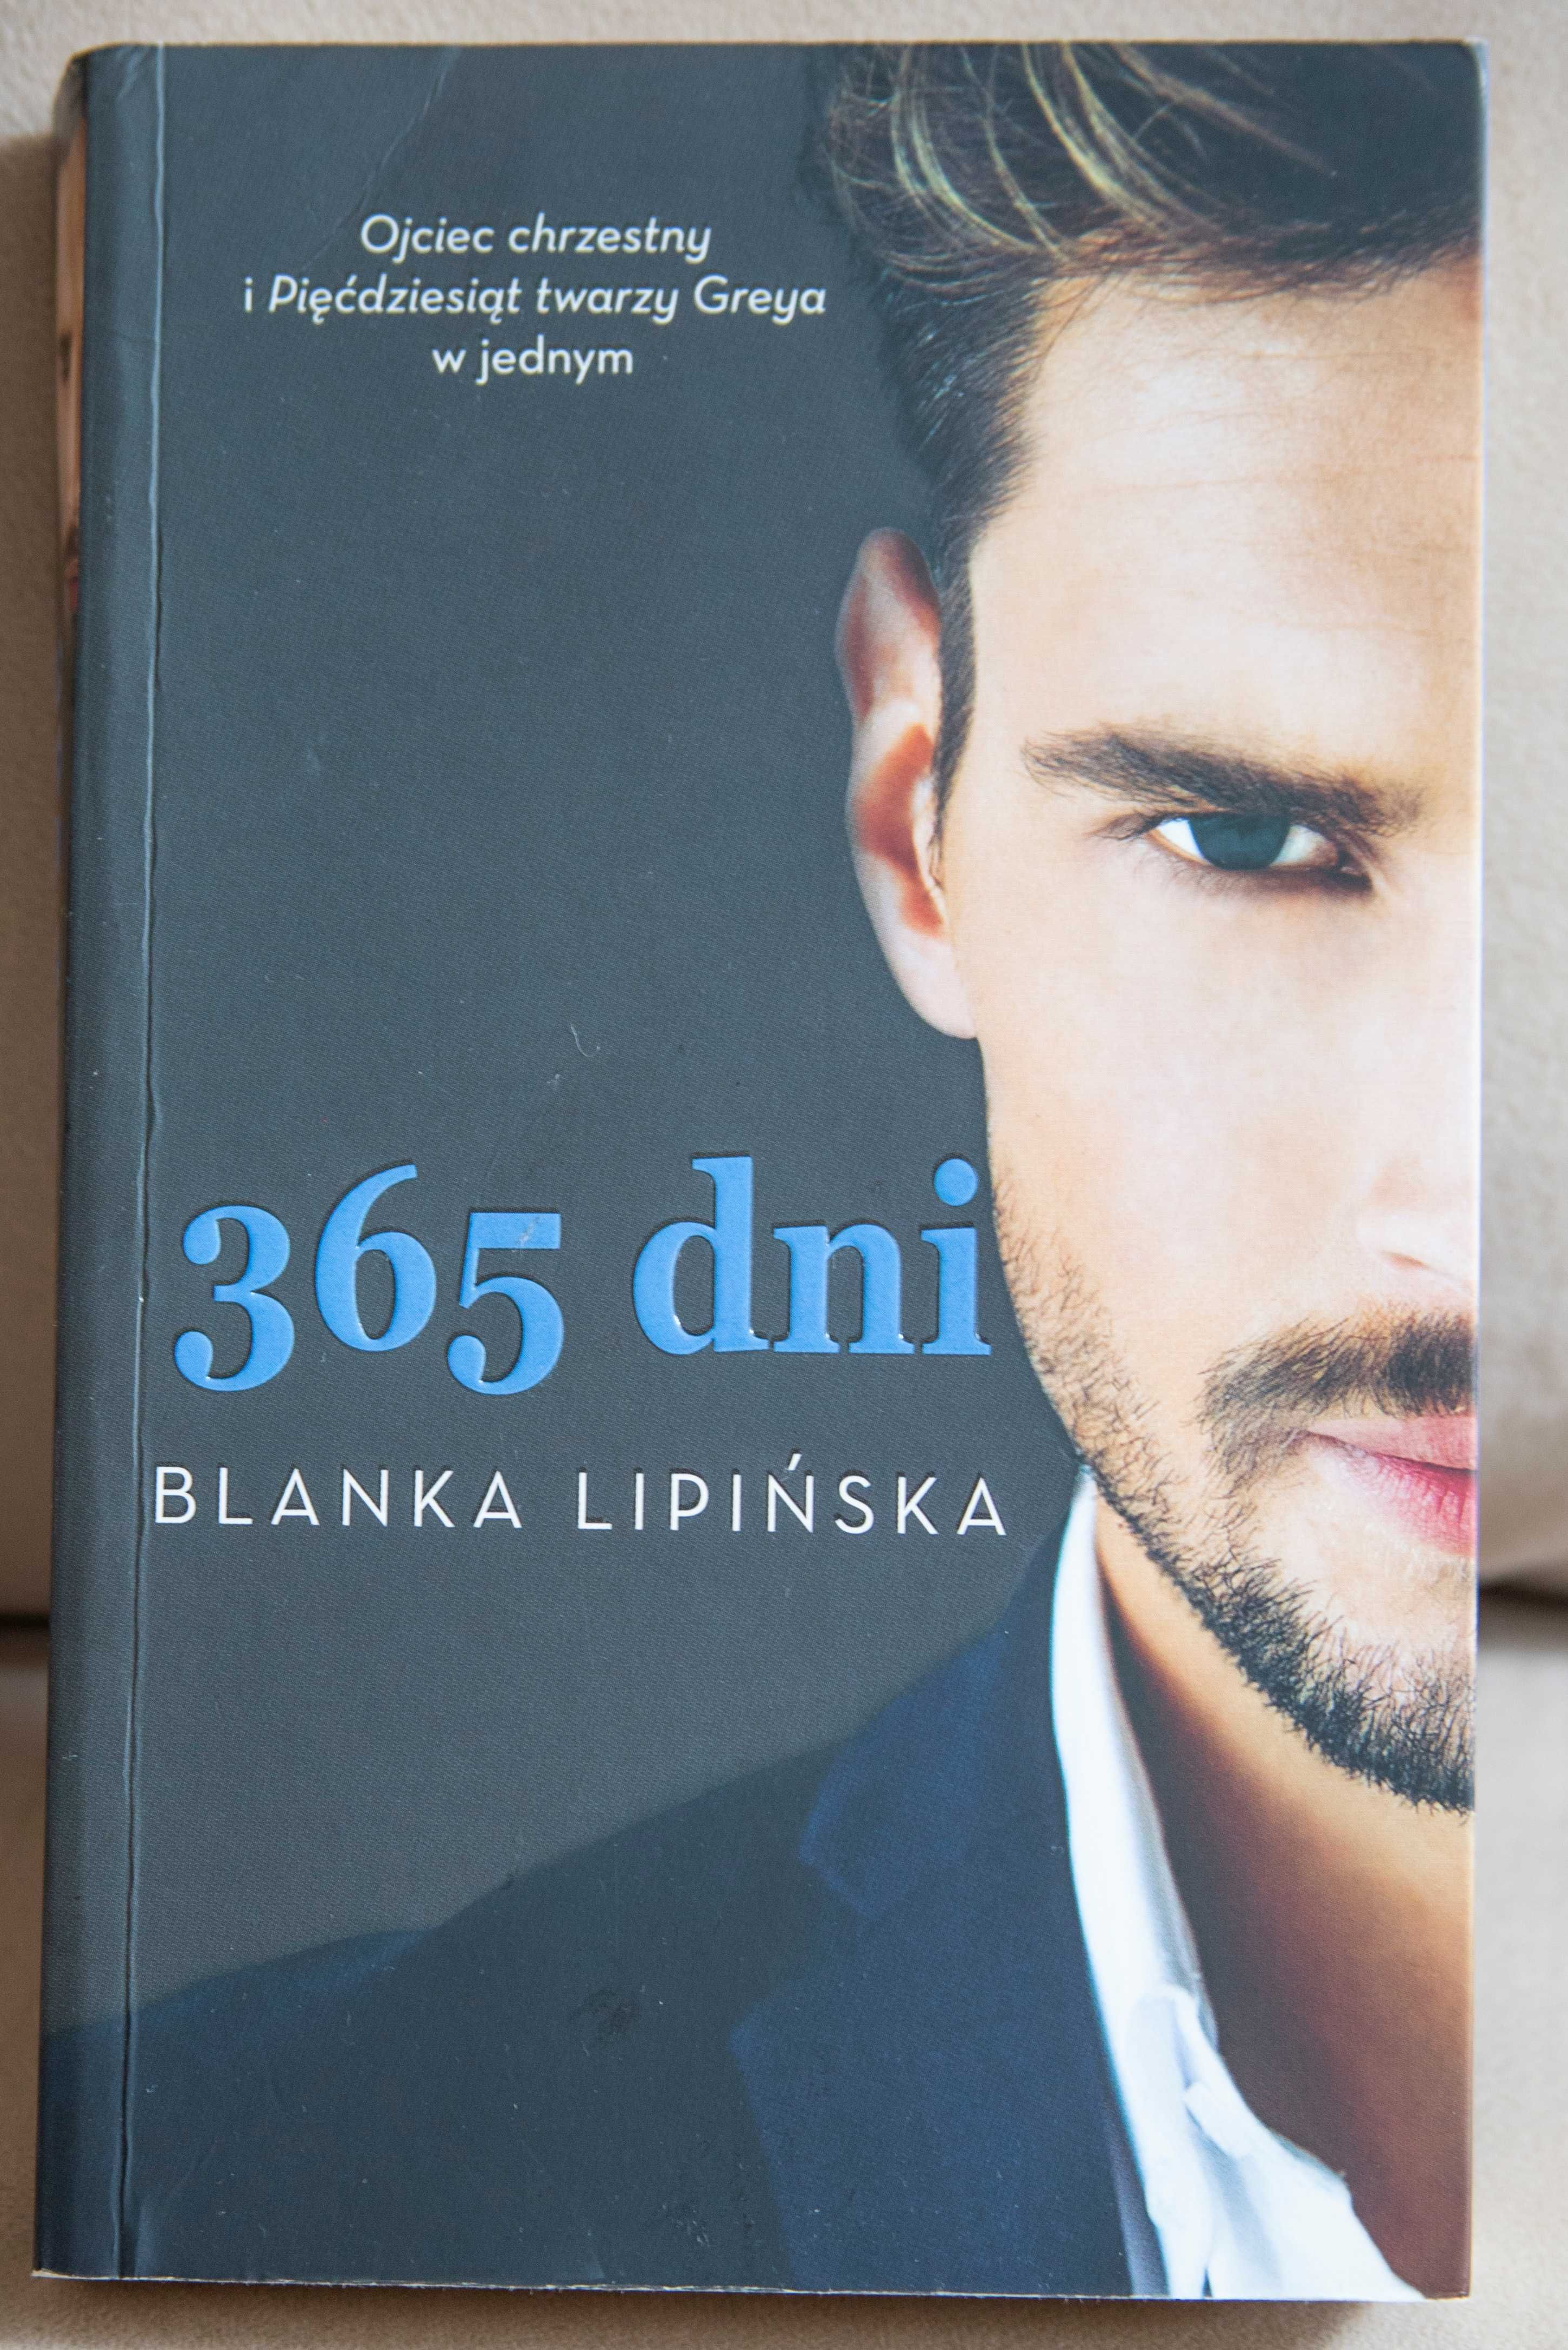 Książka "365 dni" Blanka Lipińska